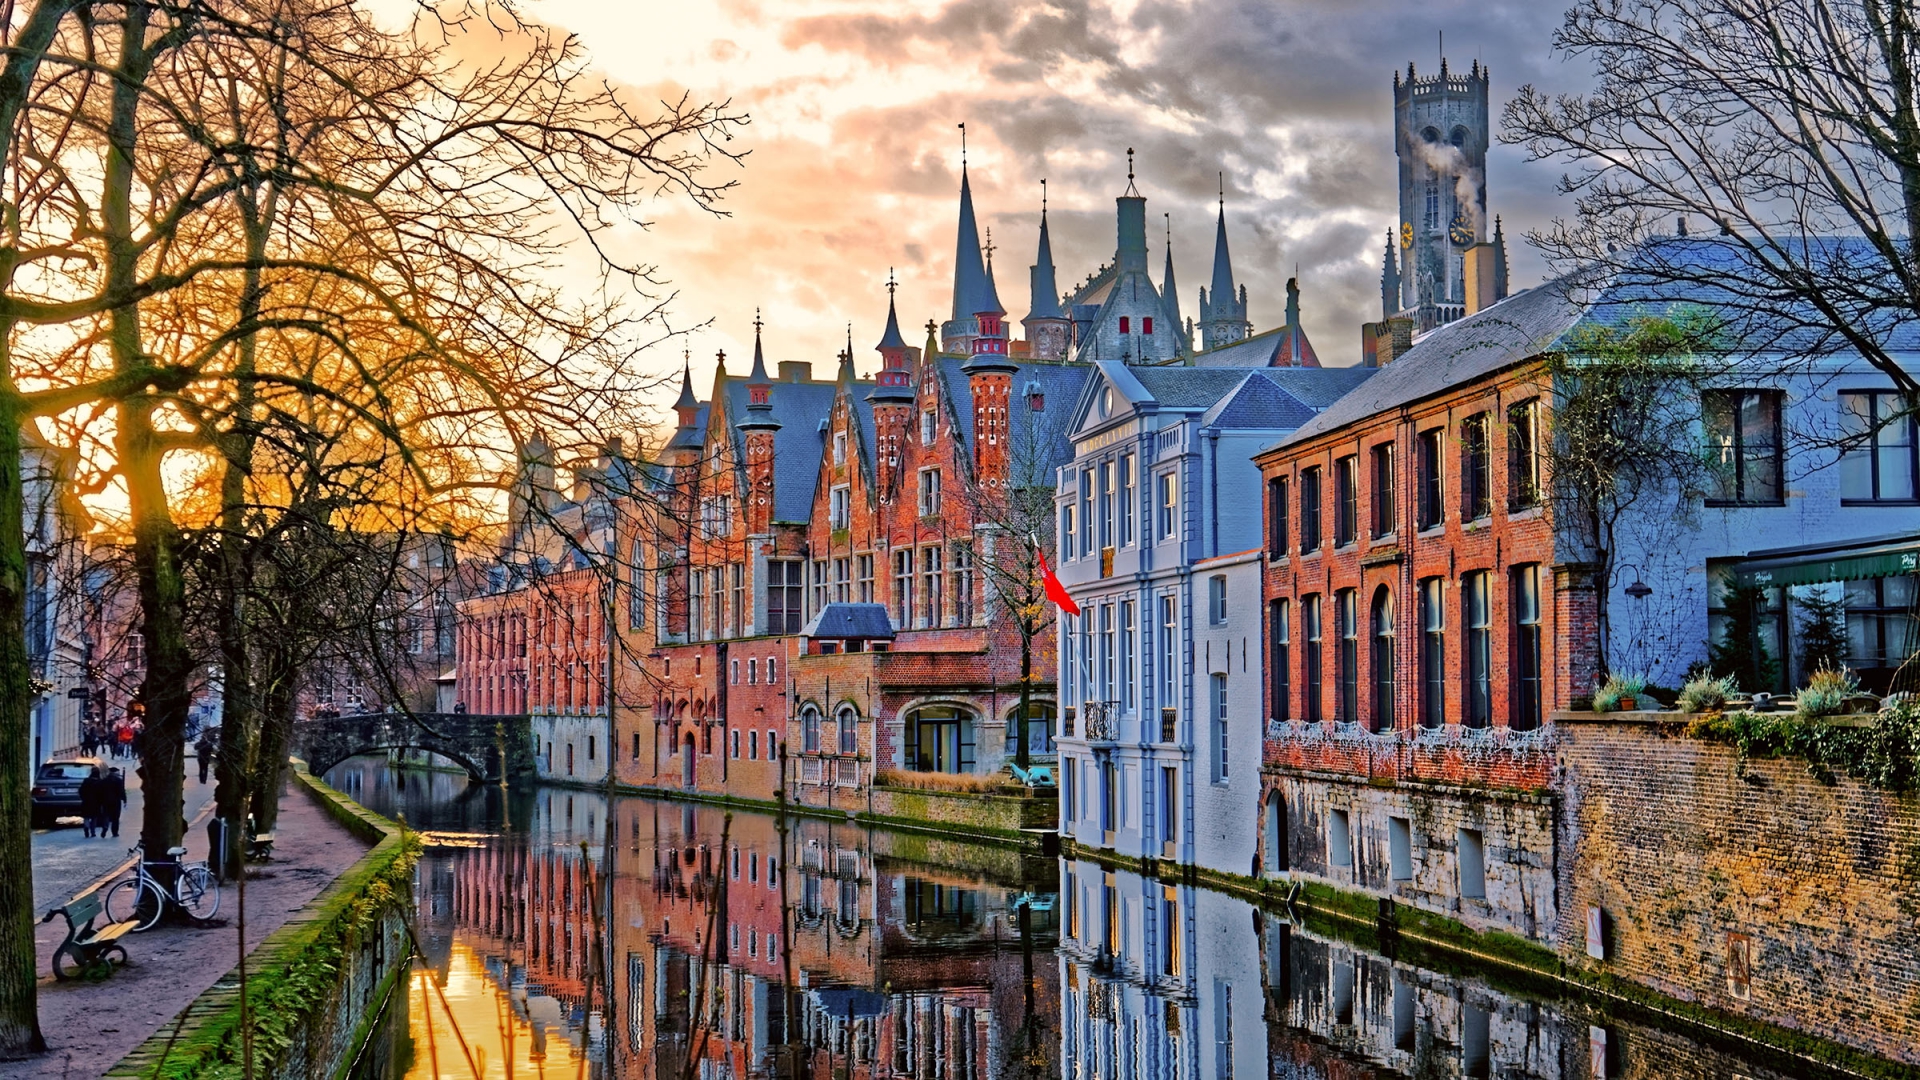 Brujas, la ciudad medieval de torres y canales que enamora (Guía y consejos)